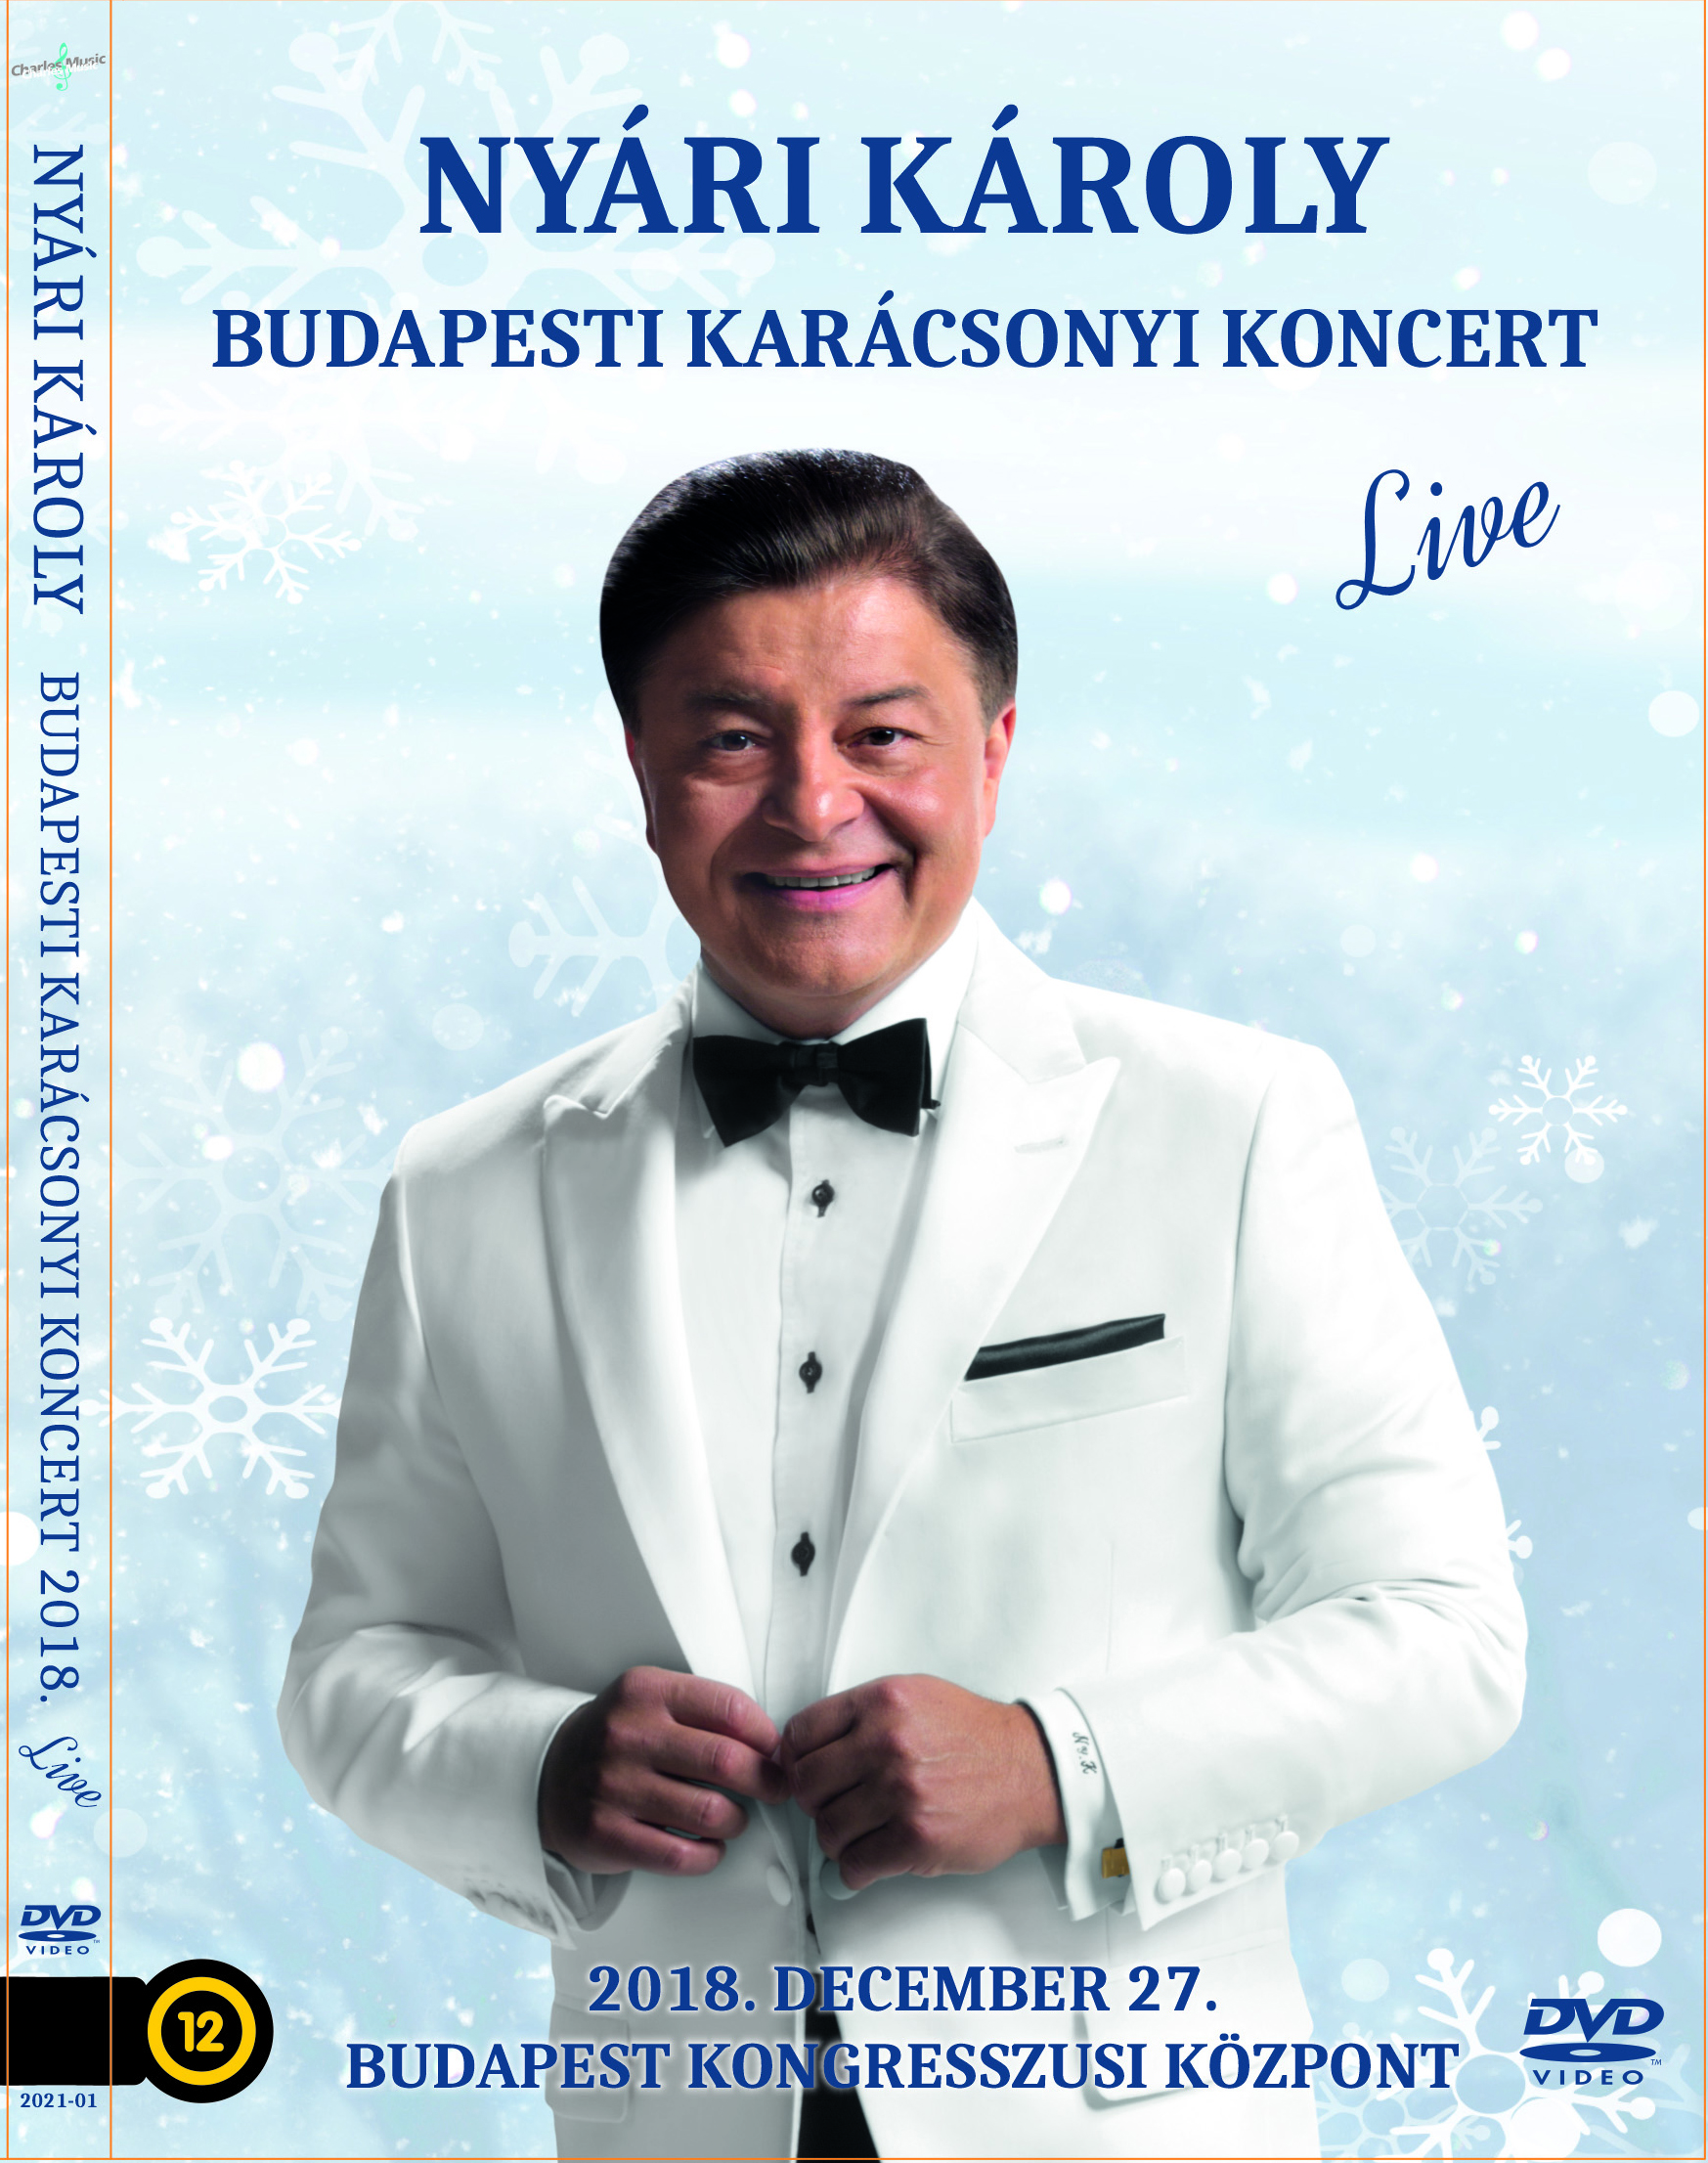 Megjelent Nyári Károly Budapesti Karácsonyi Koncert 2018. DVD-je